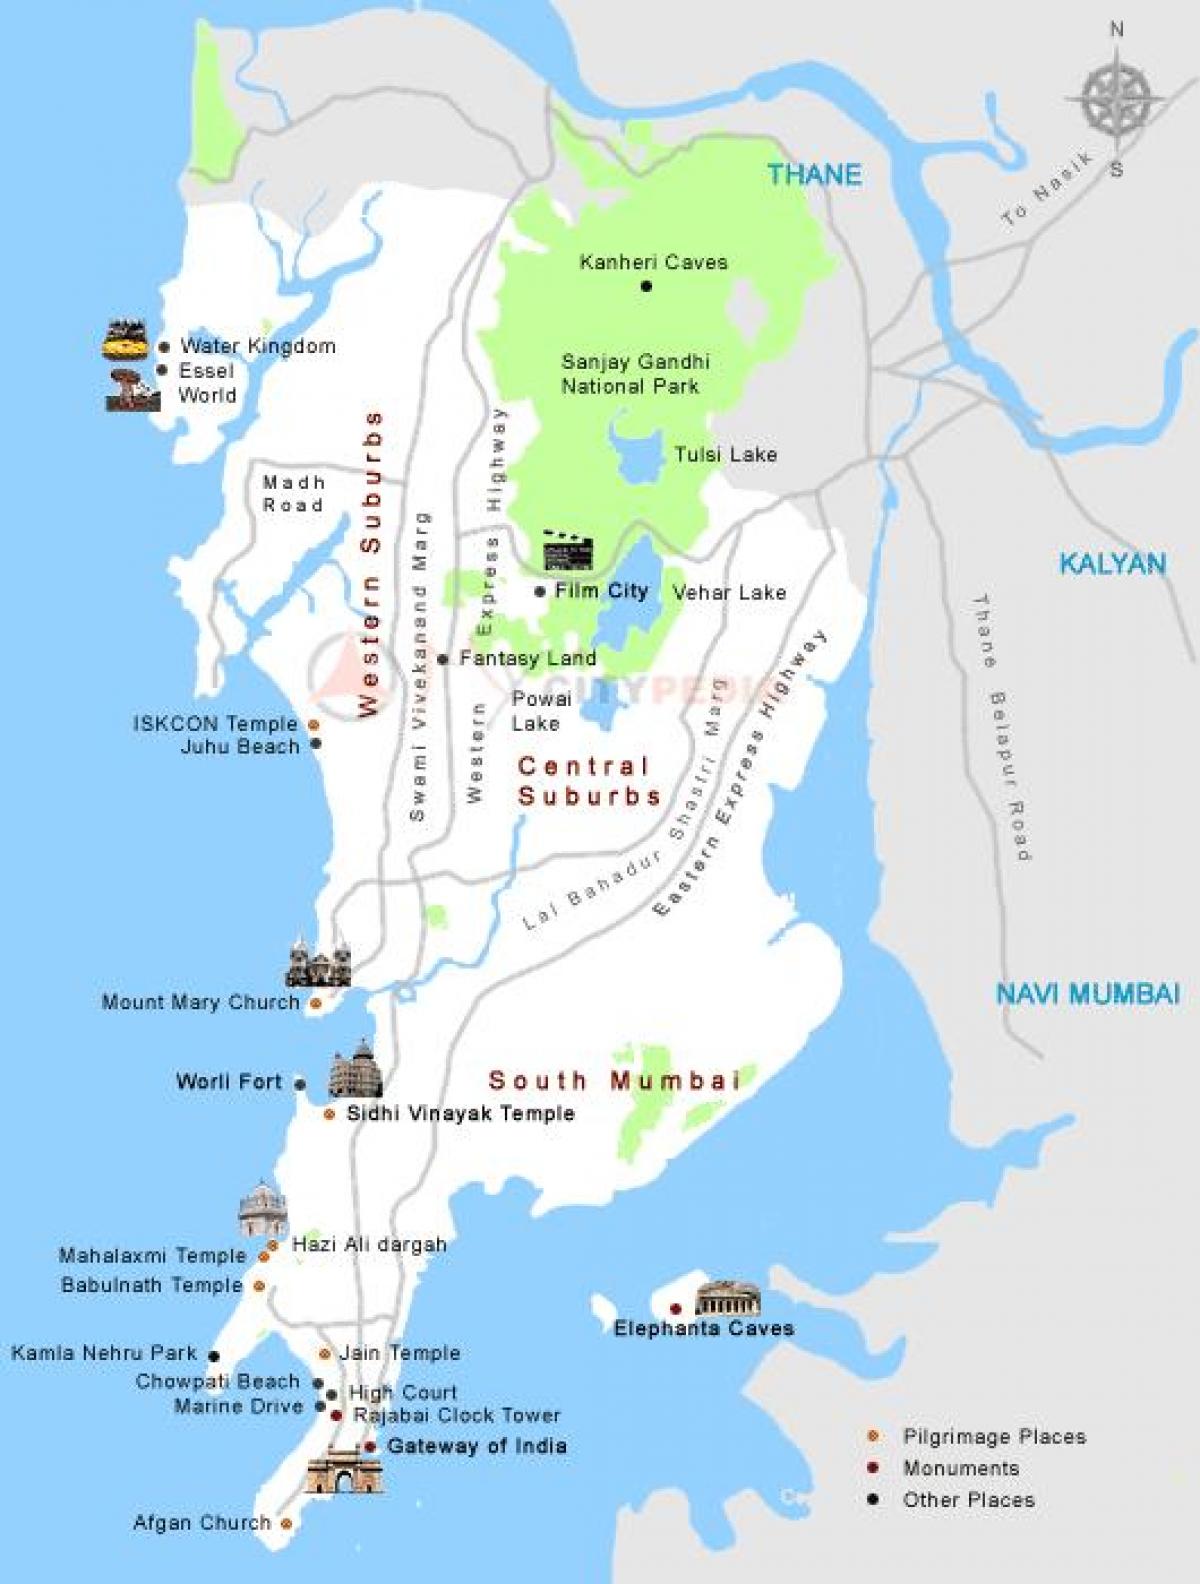 Karte von Mumbai touristischen Orten